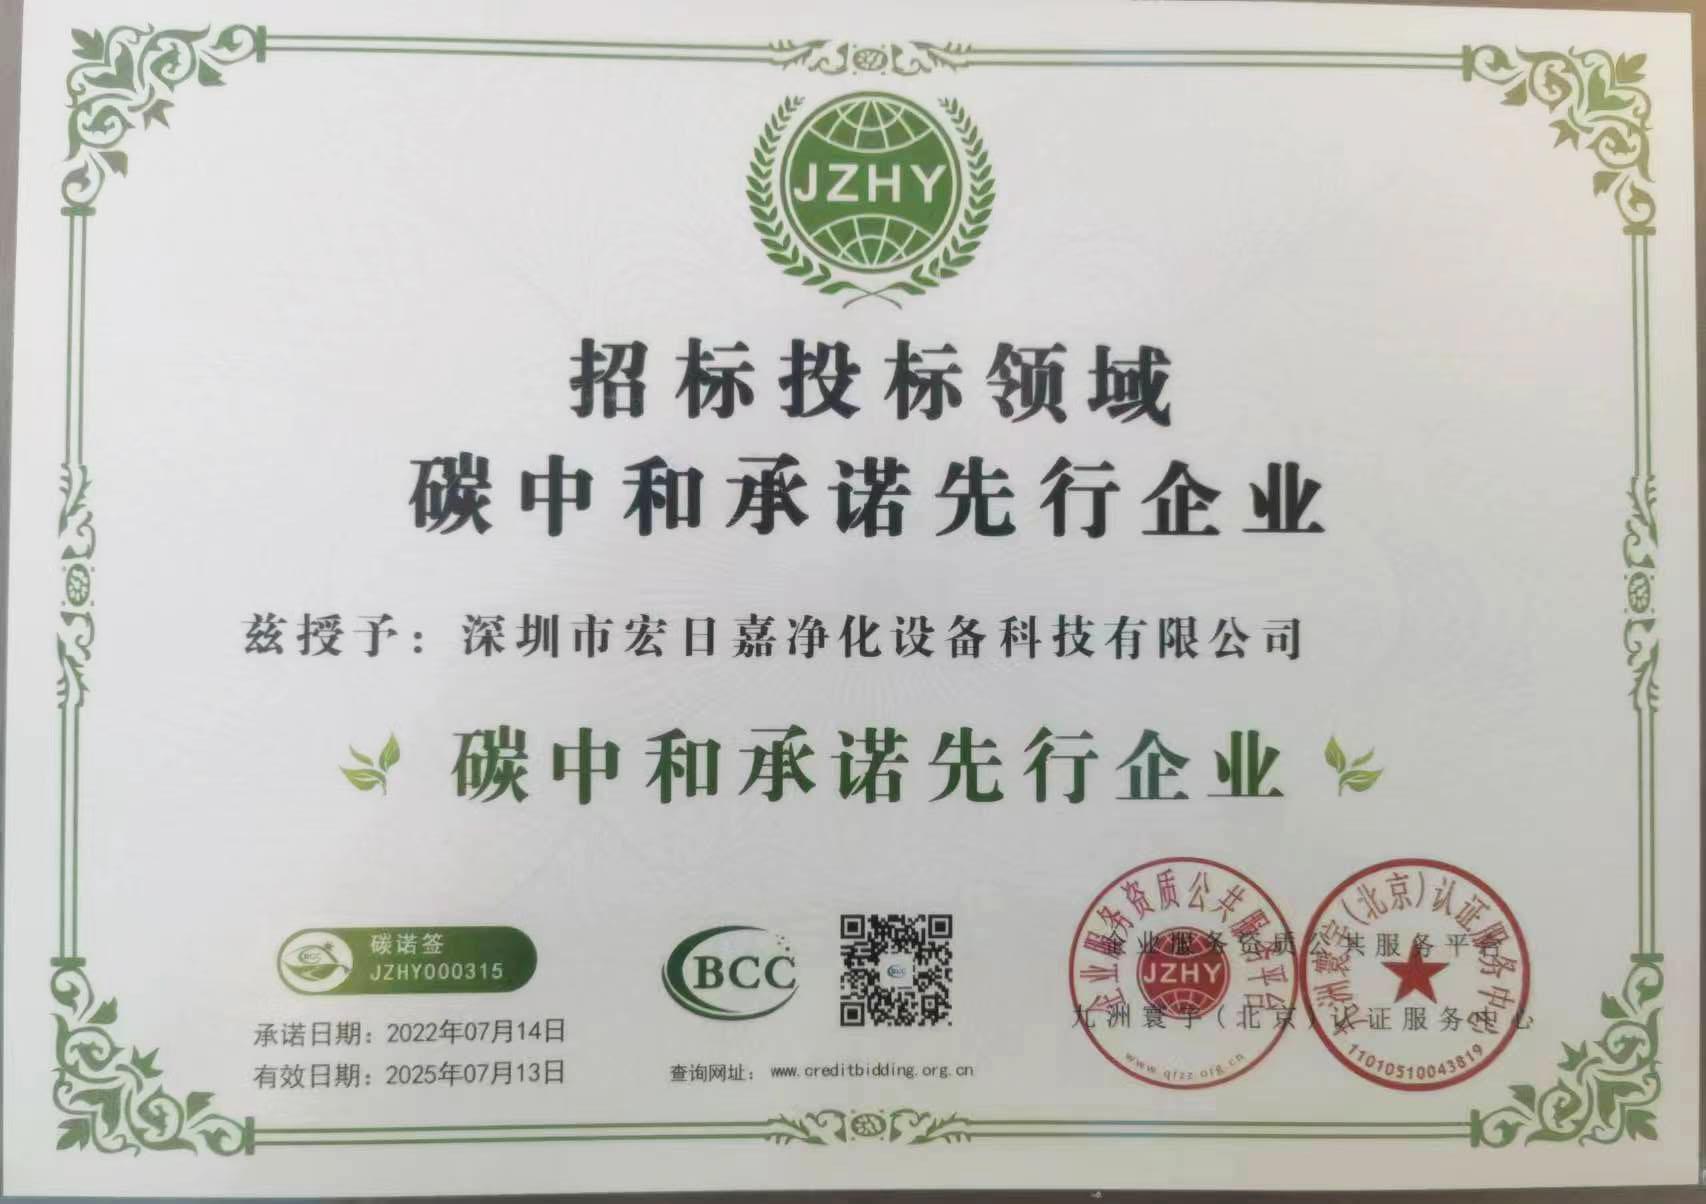 YUKA荣获“招标投标领域碳中和承诺先行企业”称号